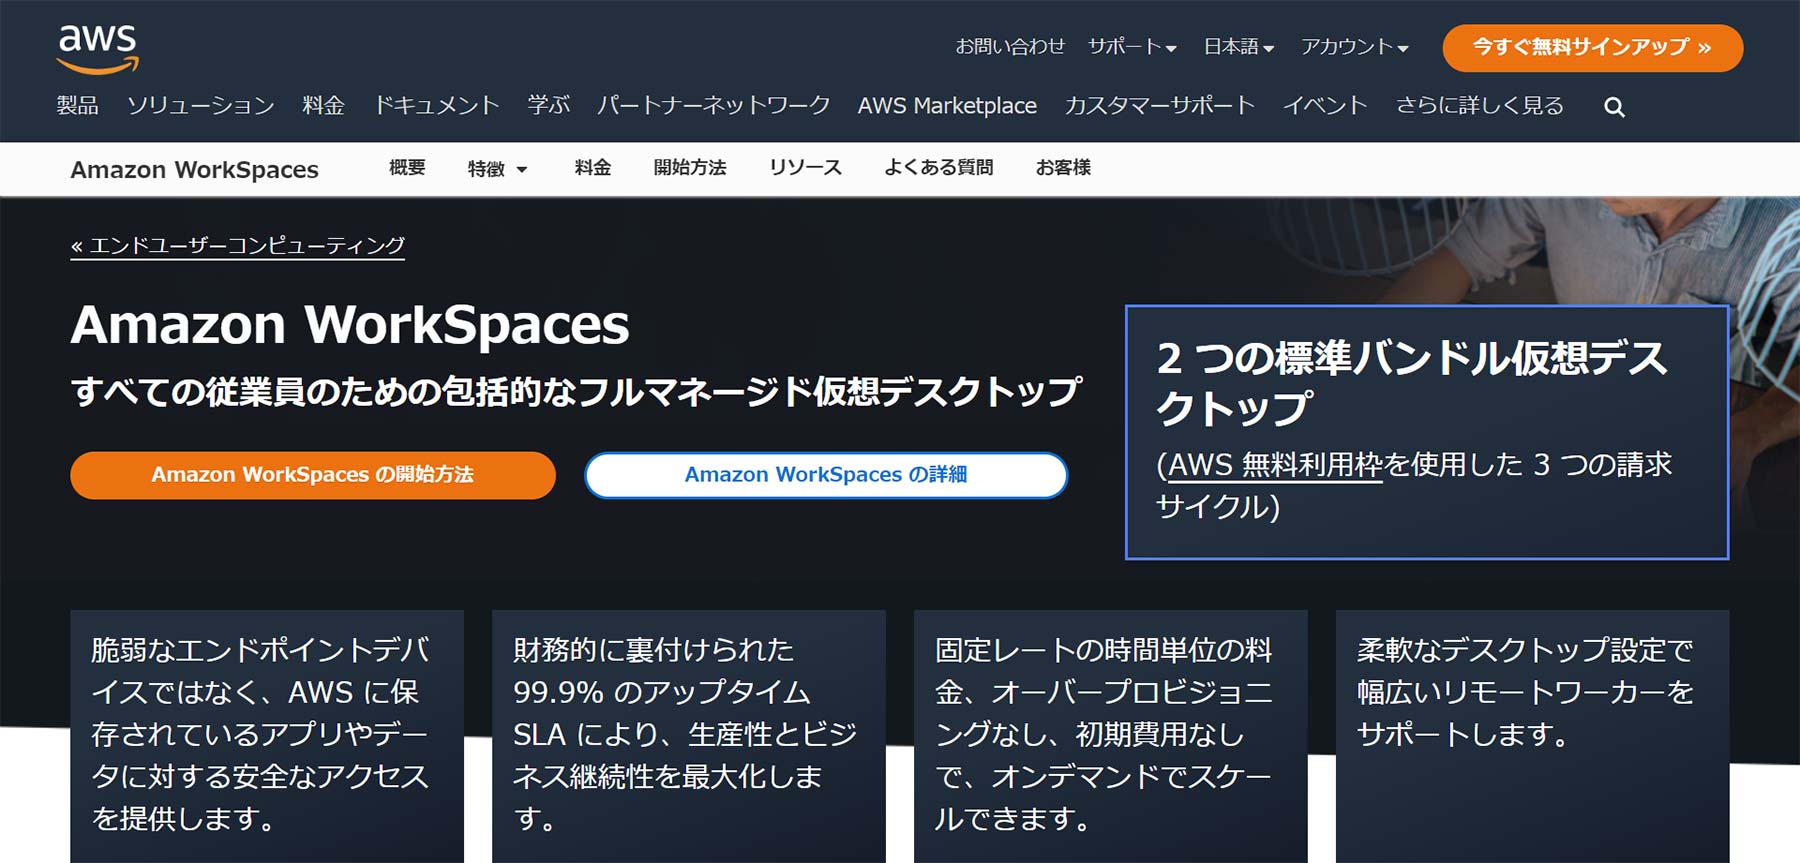 Amazon WorkSpaces公式Webサイト